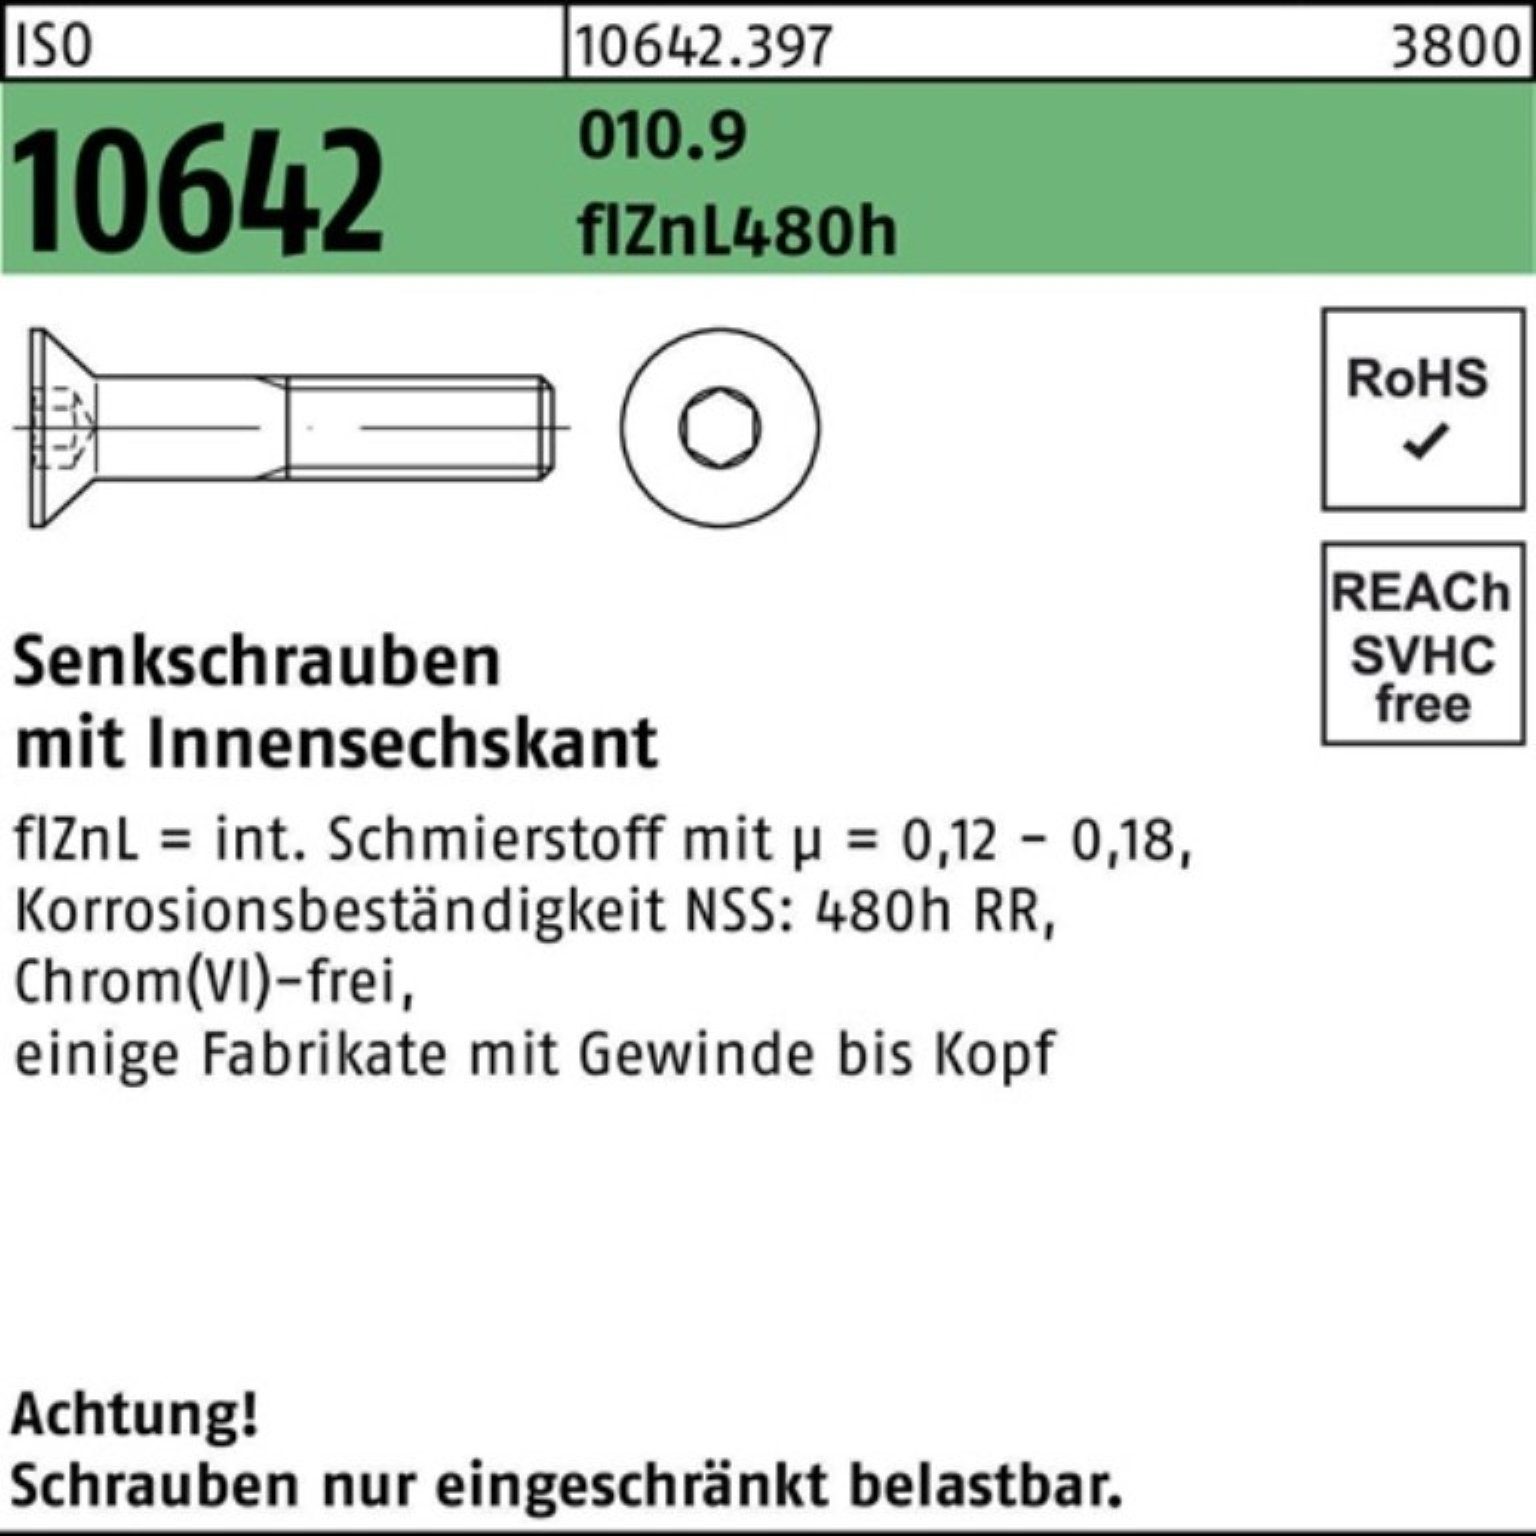 Reyher Senkschraube 200er Pack 010.9 M10x30 zi Senkschraube ISO Innen-6kt 10642 flZnL 480h